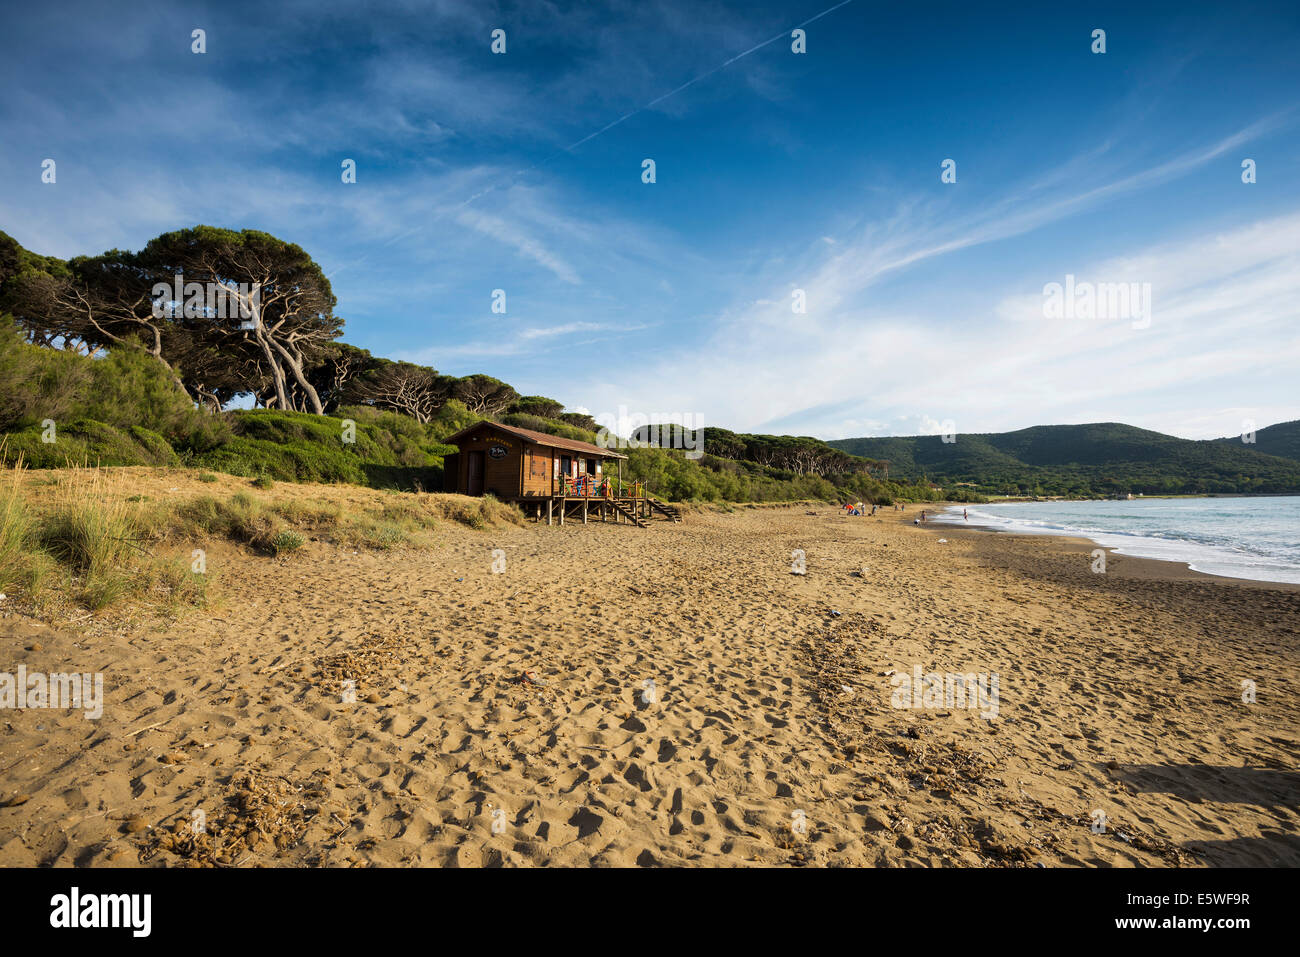 Beach bar, beach of Populonia, Livorno Province, Tuscany, Italy Stock Photo